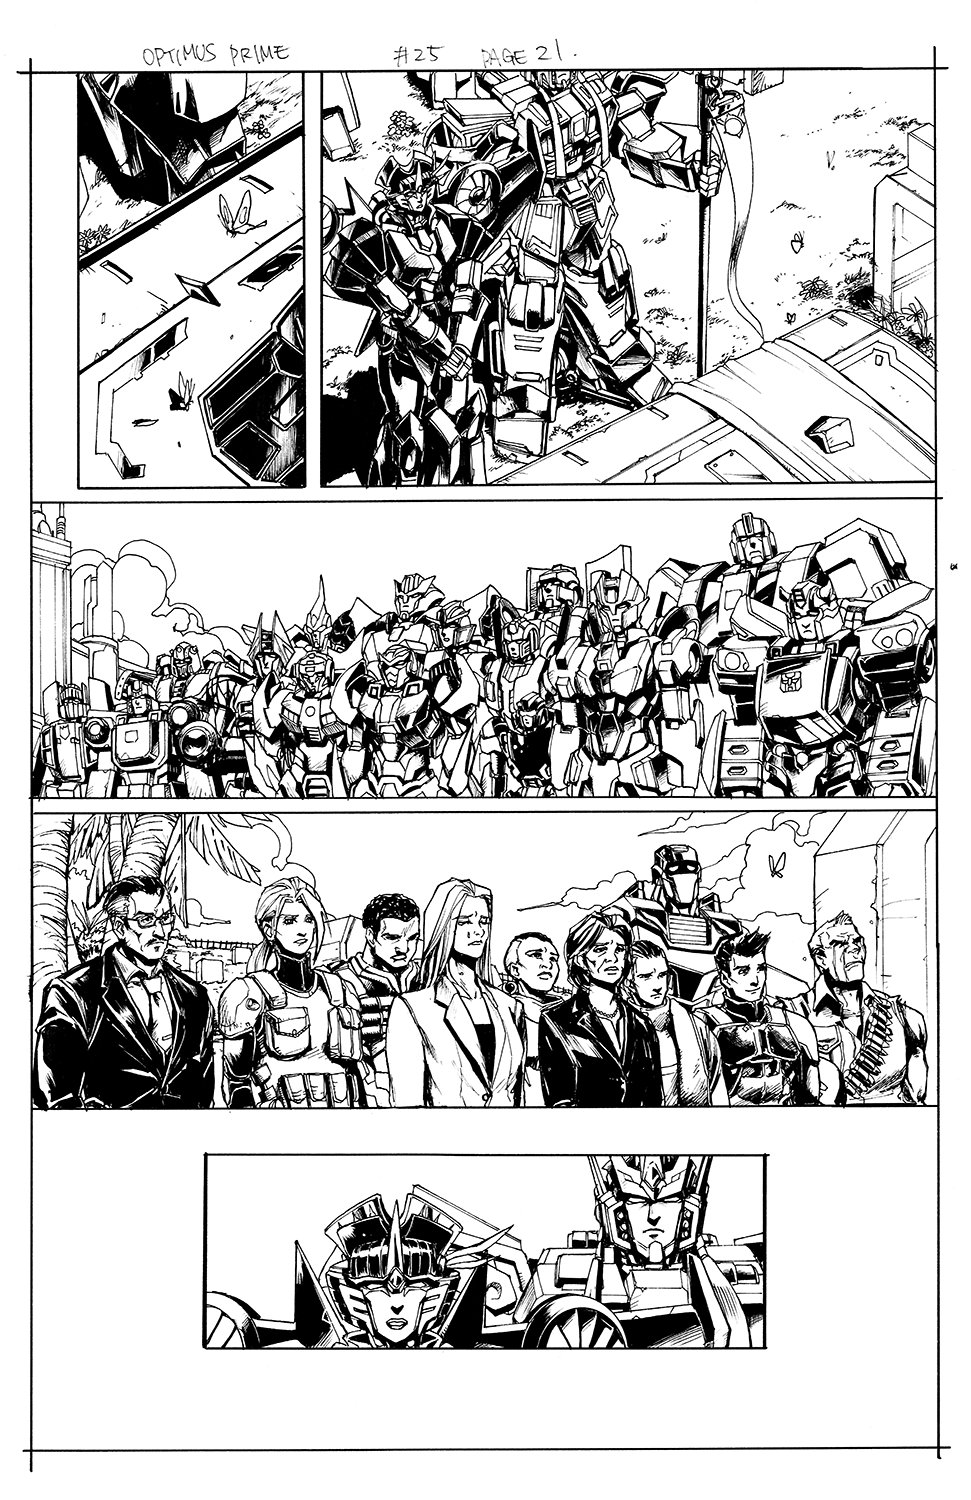 Optimus Prime #25 Page 21